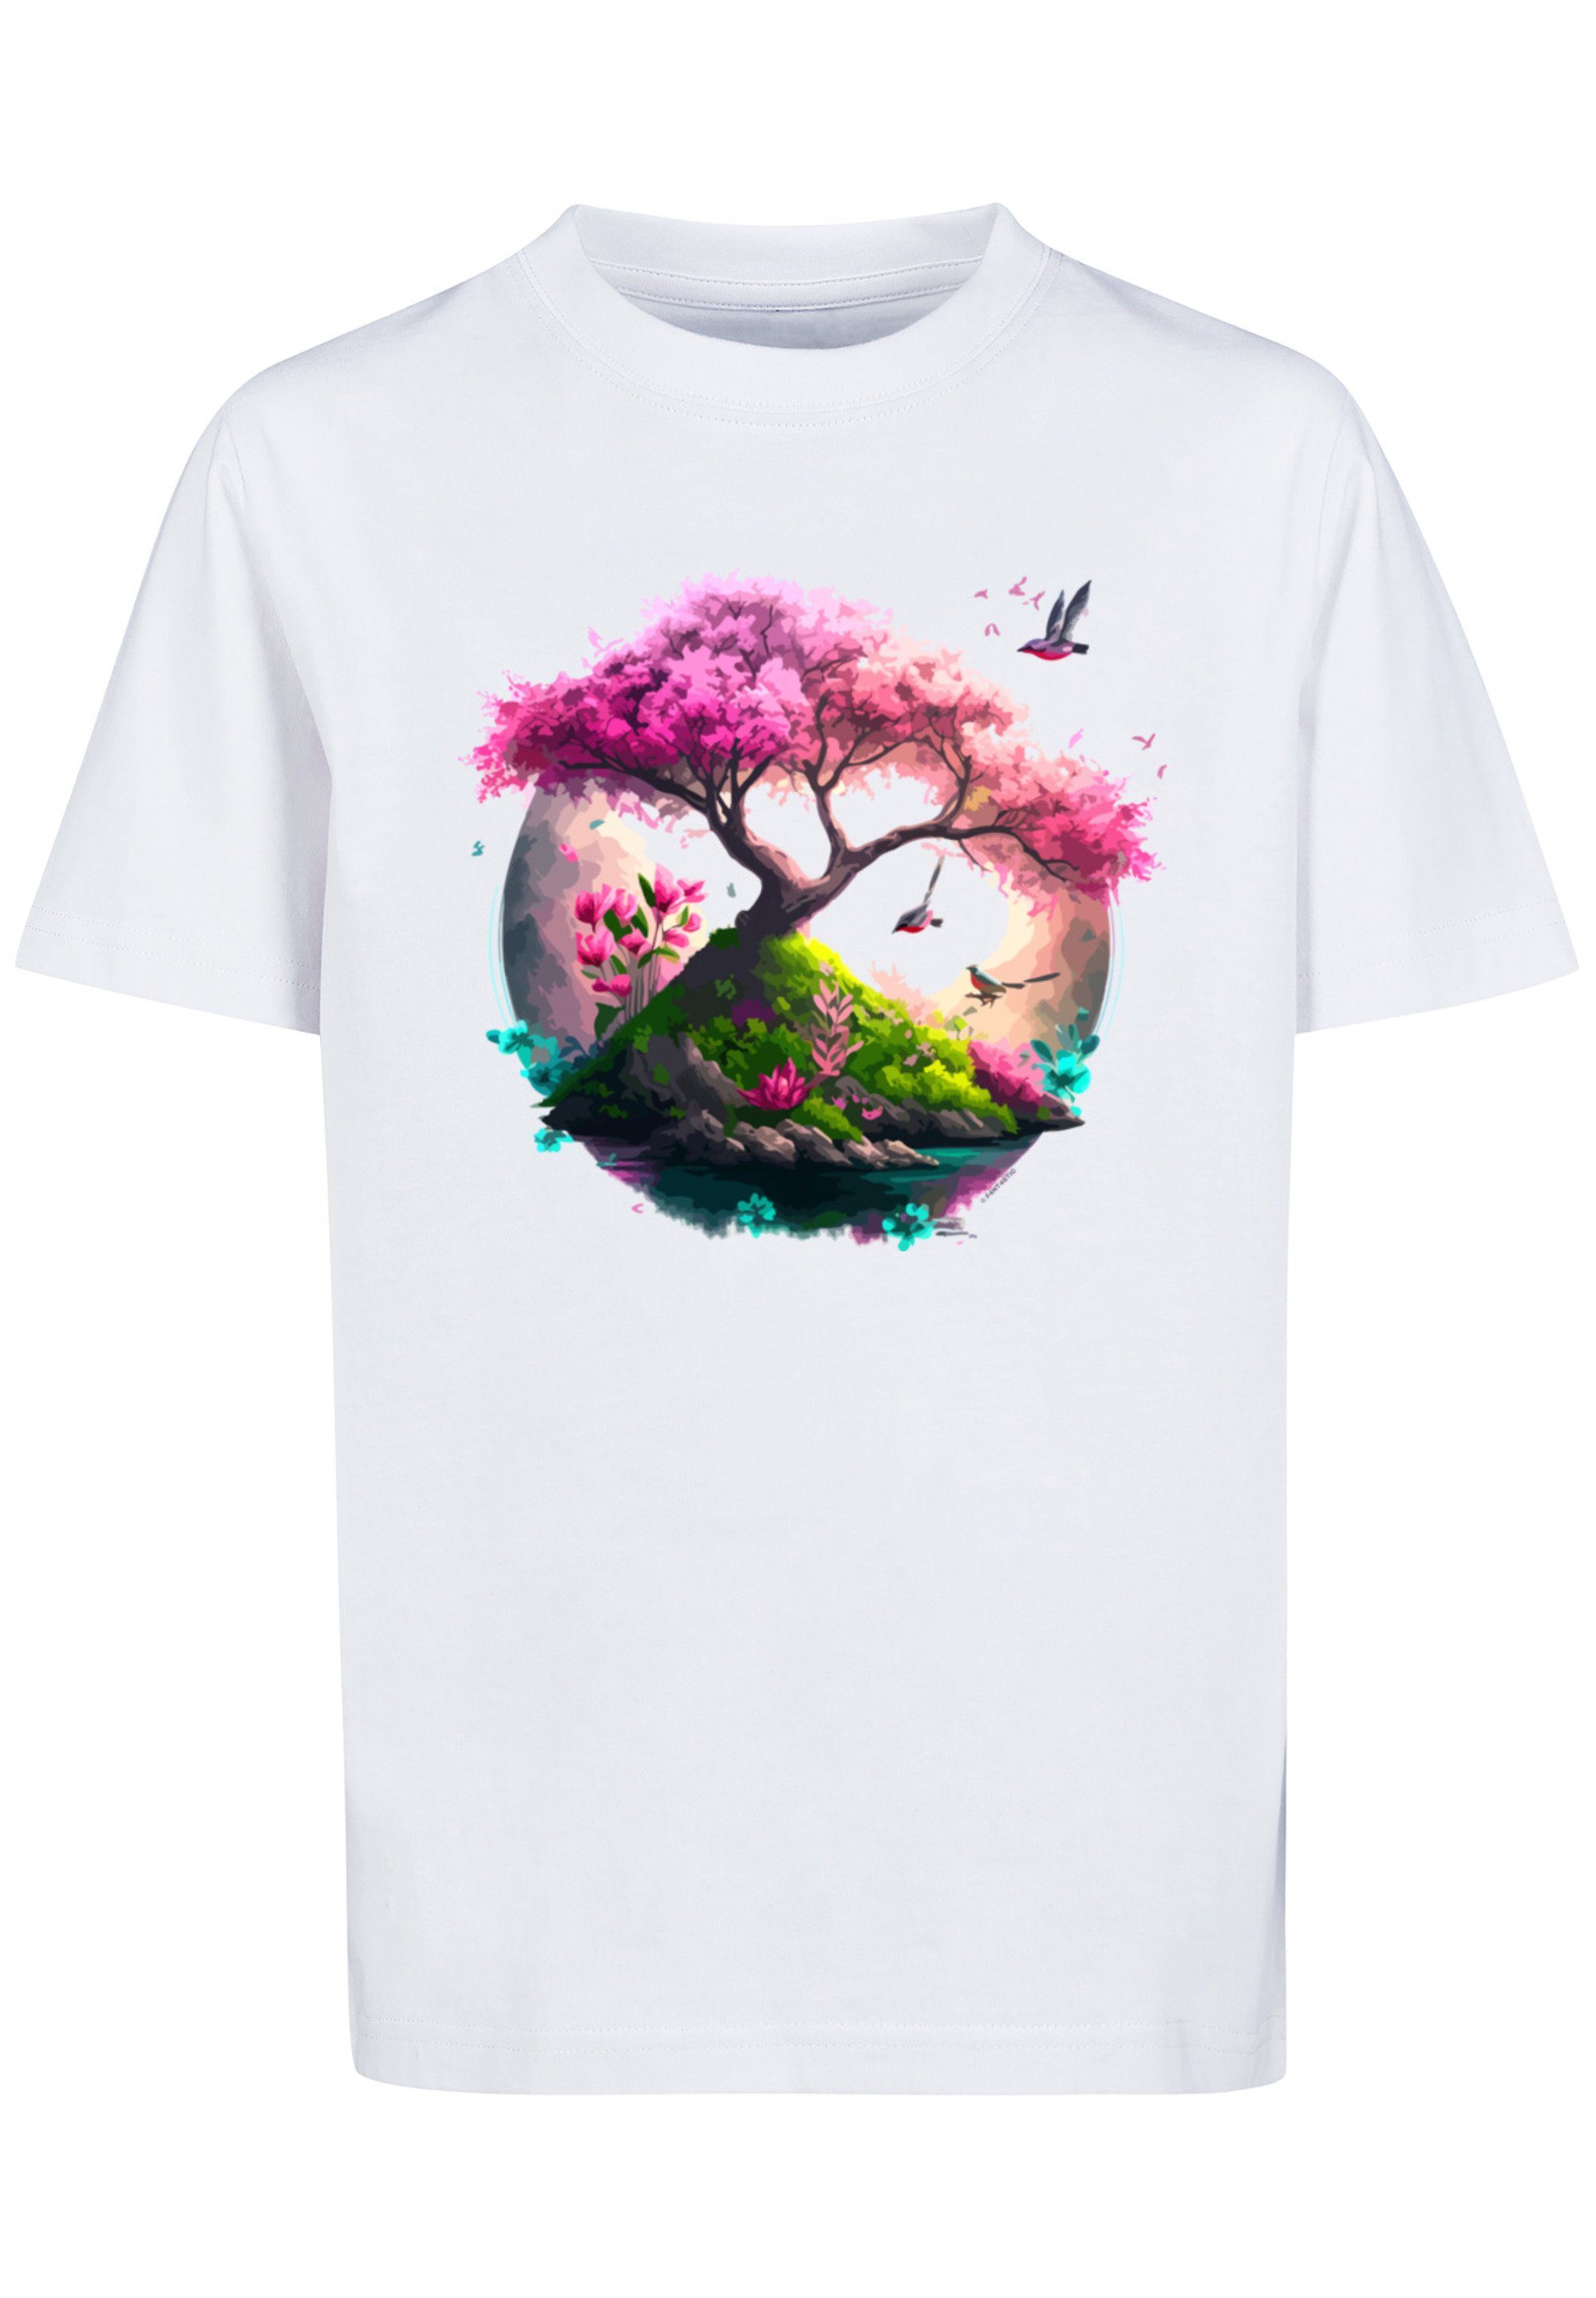 T-Shirt Tee weiß Baum Print Unisex F4NT4STIC Kirschblüten